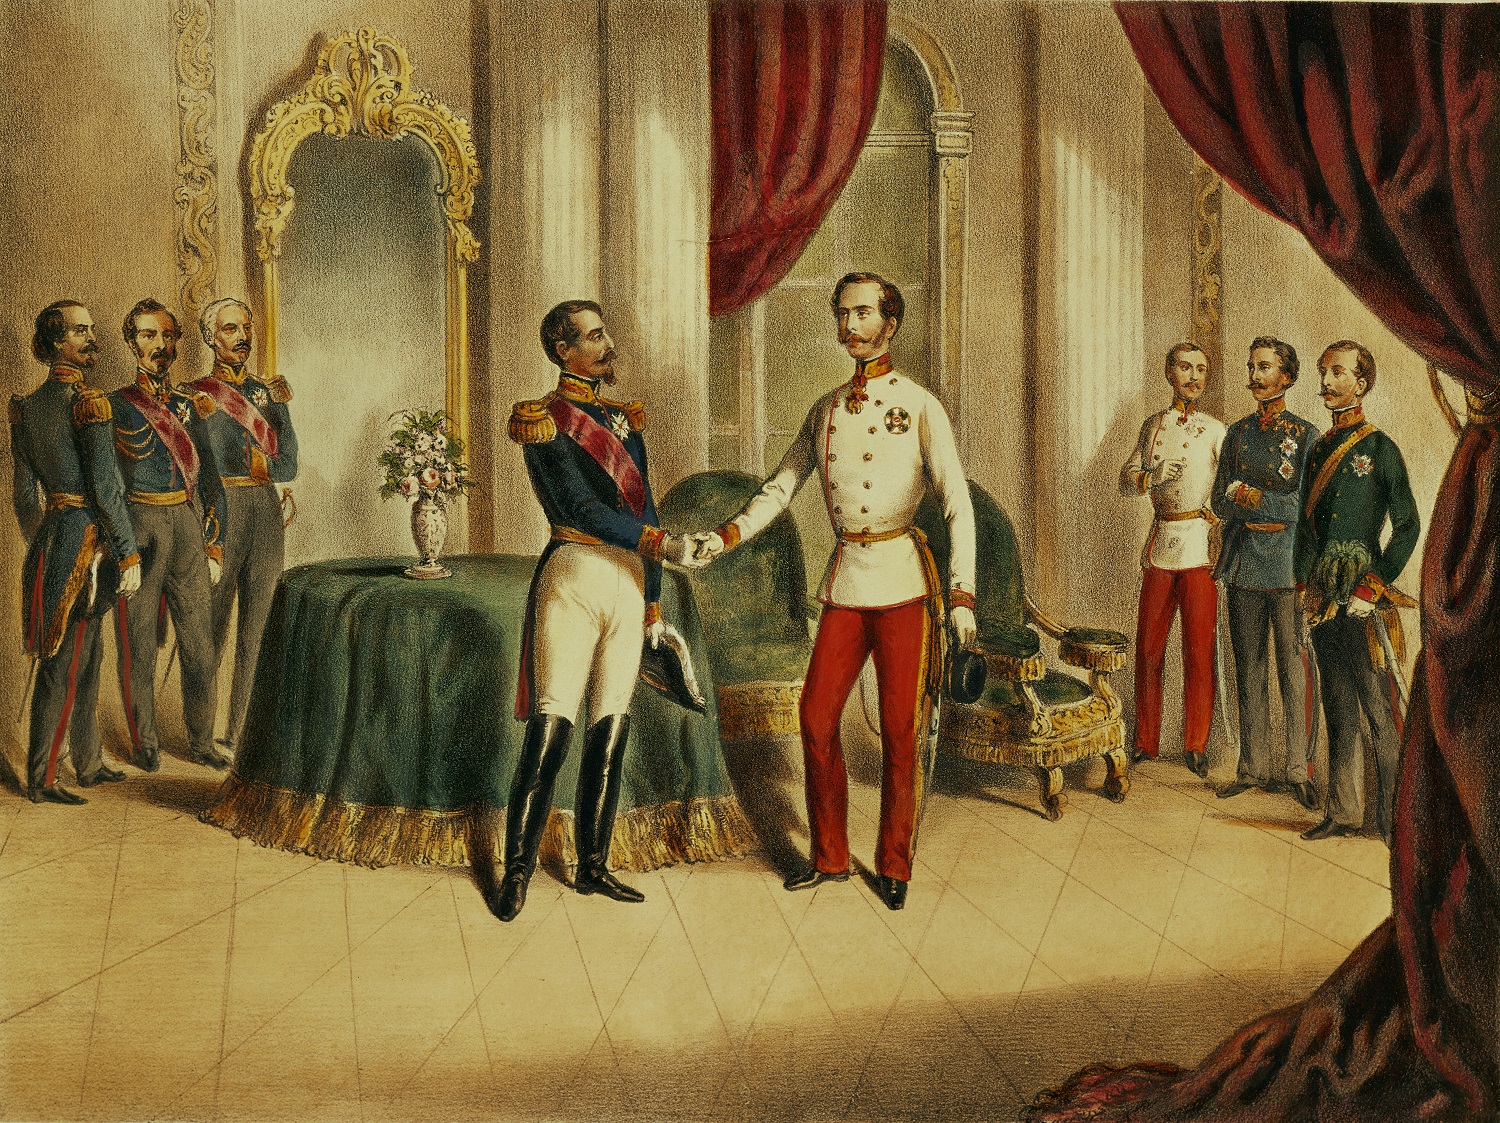 1859 júliusa, Ferenc József és III. Napóleon találkozója Villafrancában, ahol aláírták a tűzszünetet az osztrák vereséggel végződő olasz háborúk végén. Forrás: Imagno/Getty Images 